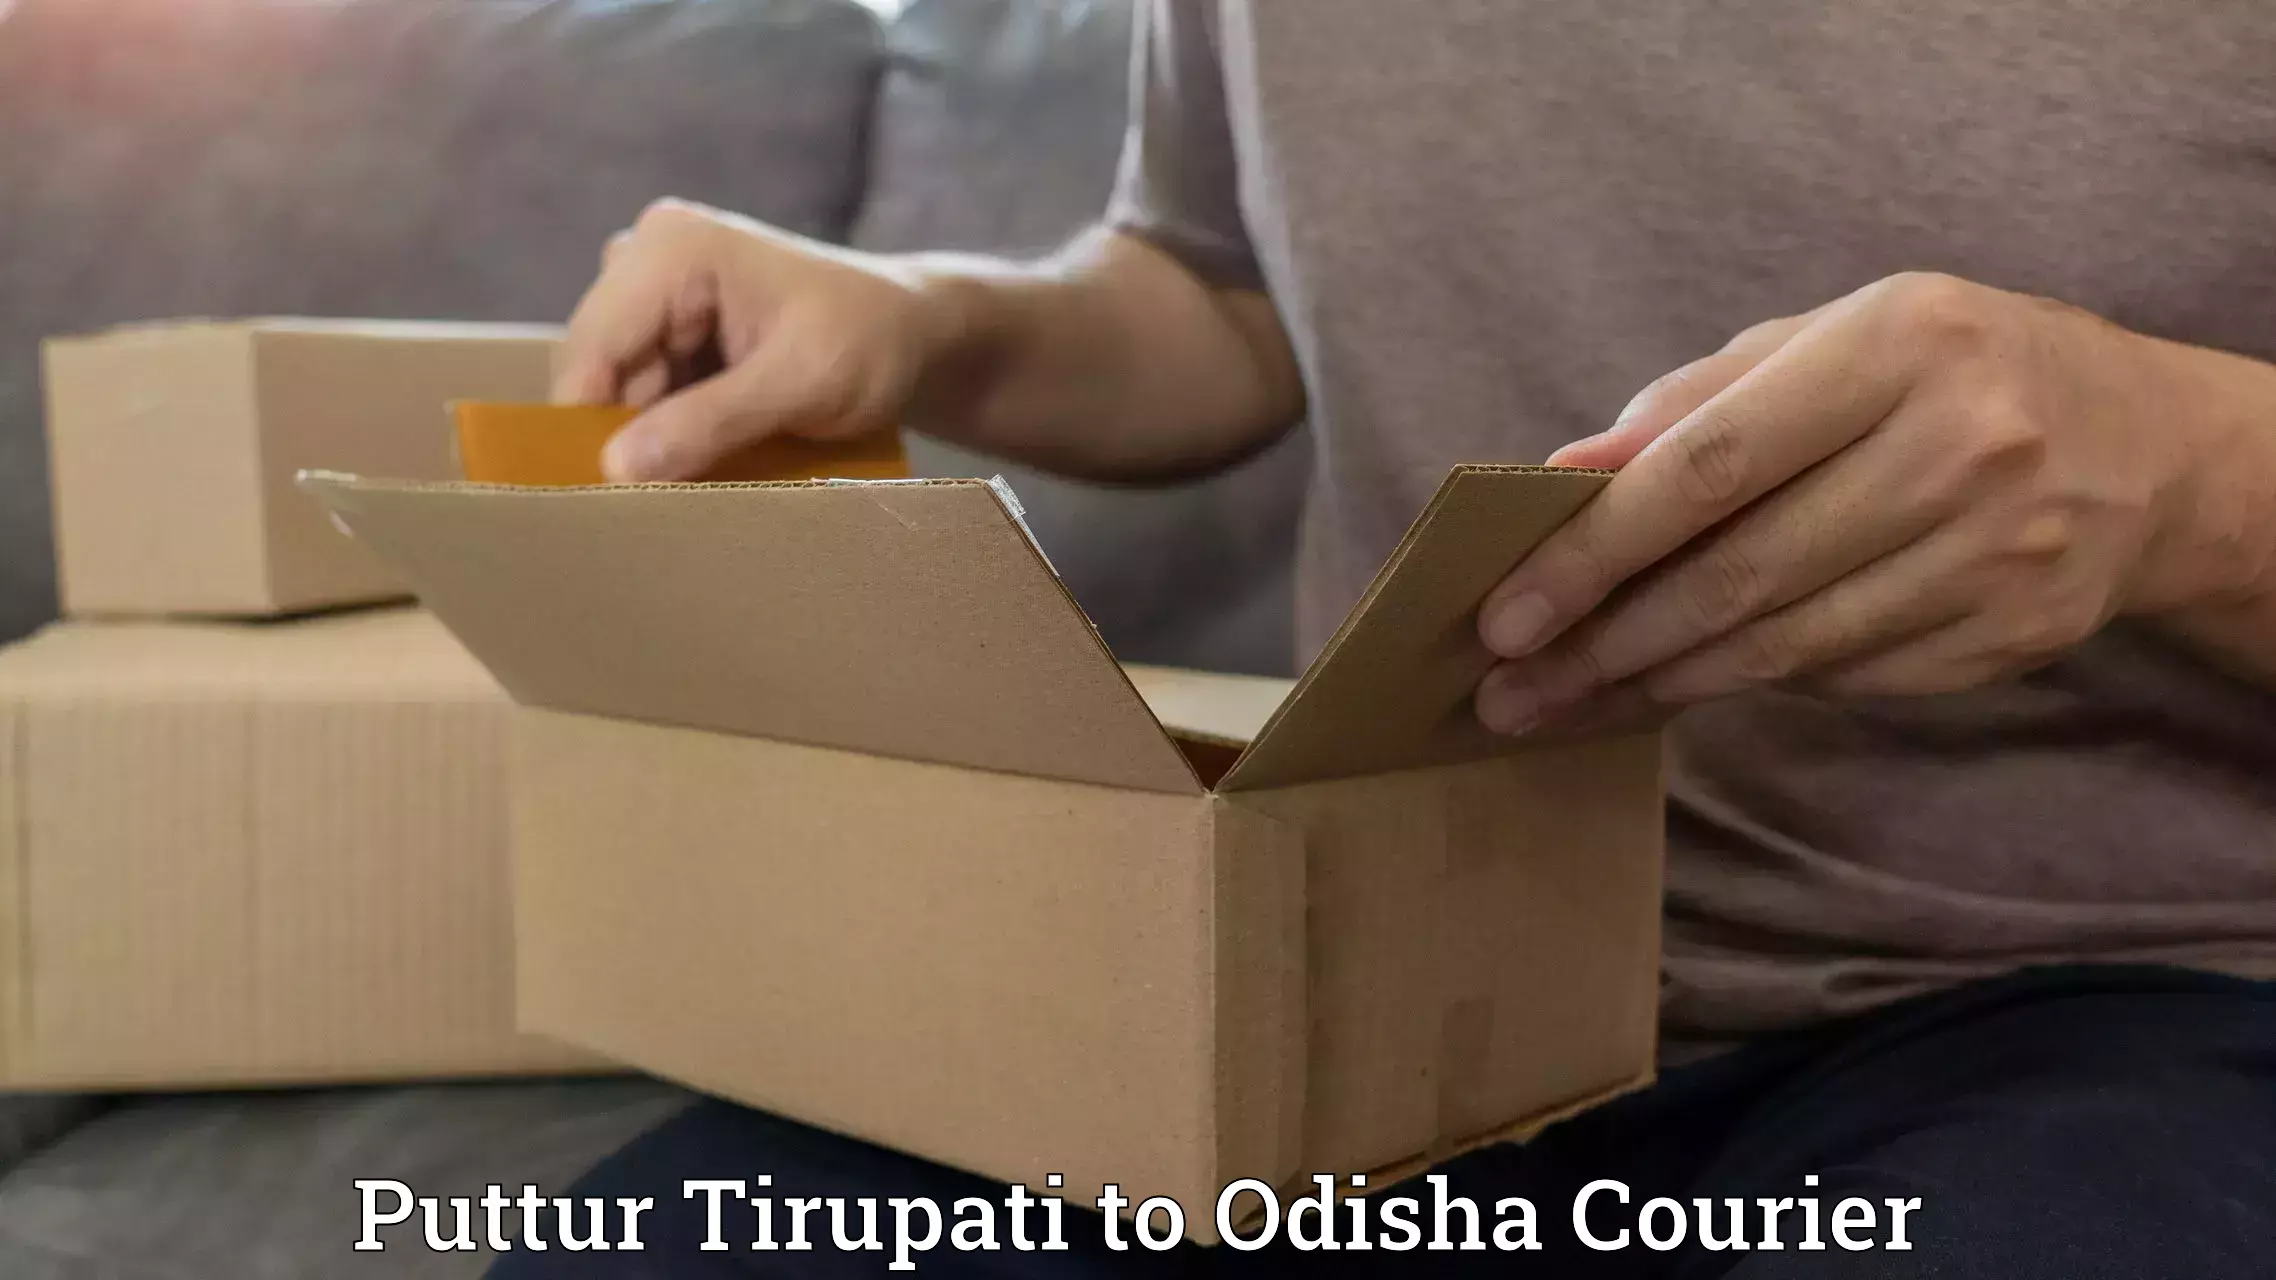 Pharmaceutical courier Puttur Tirupati to Dukura